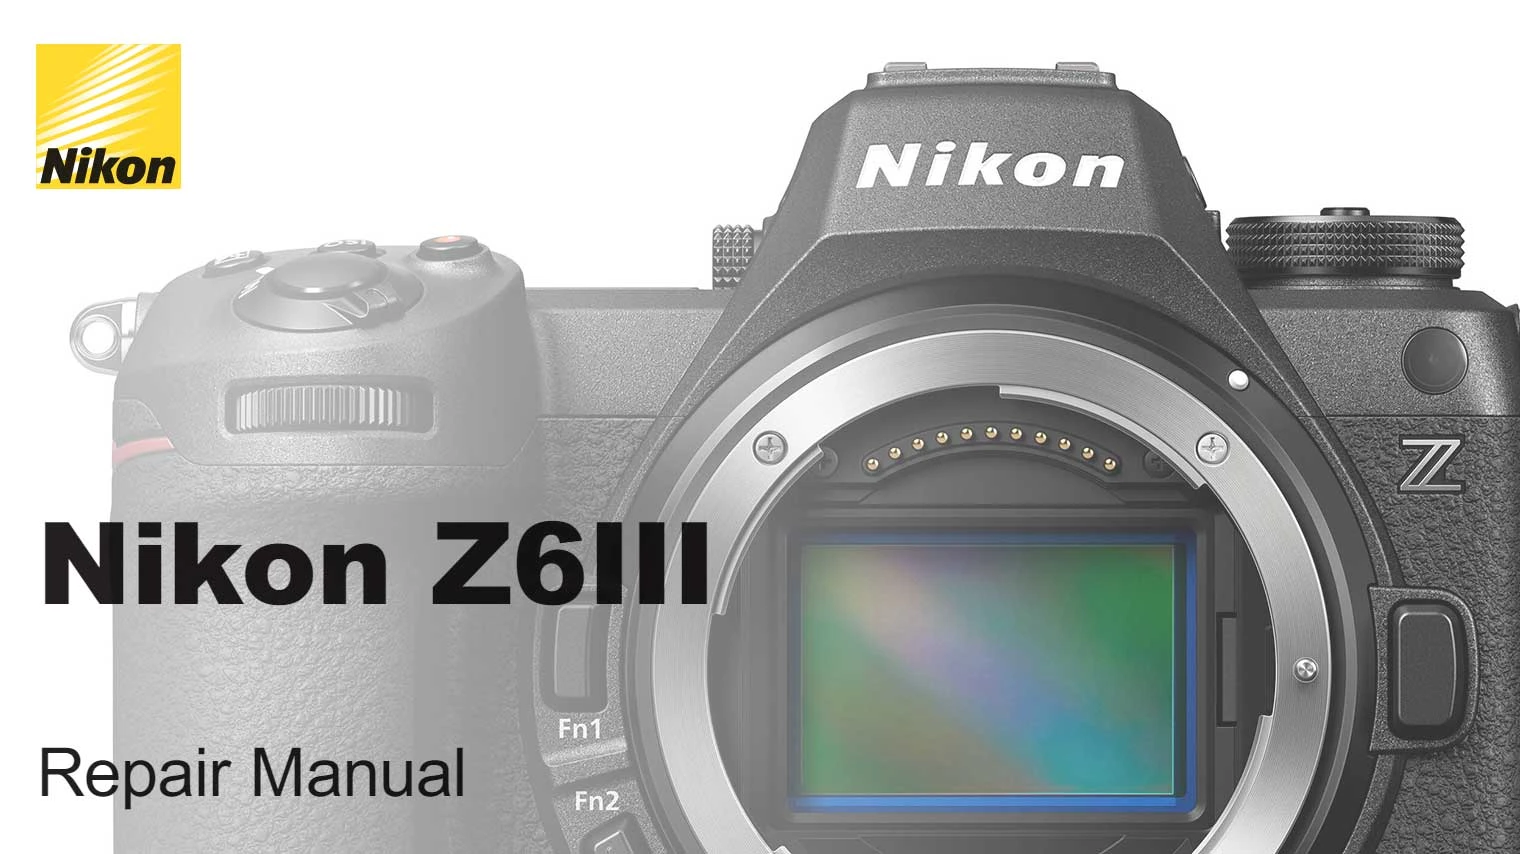 Keren, Nikon Rilis Buku Panduan Perbaikan Nikon Z6 III, Jadi Bisa Service Sendiri Deh Di Rumah.